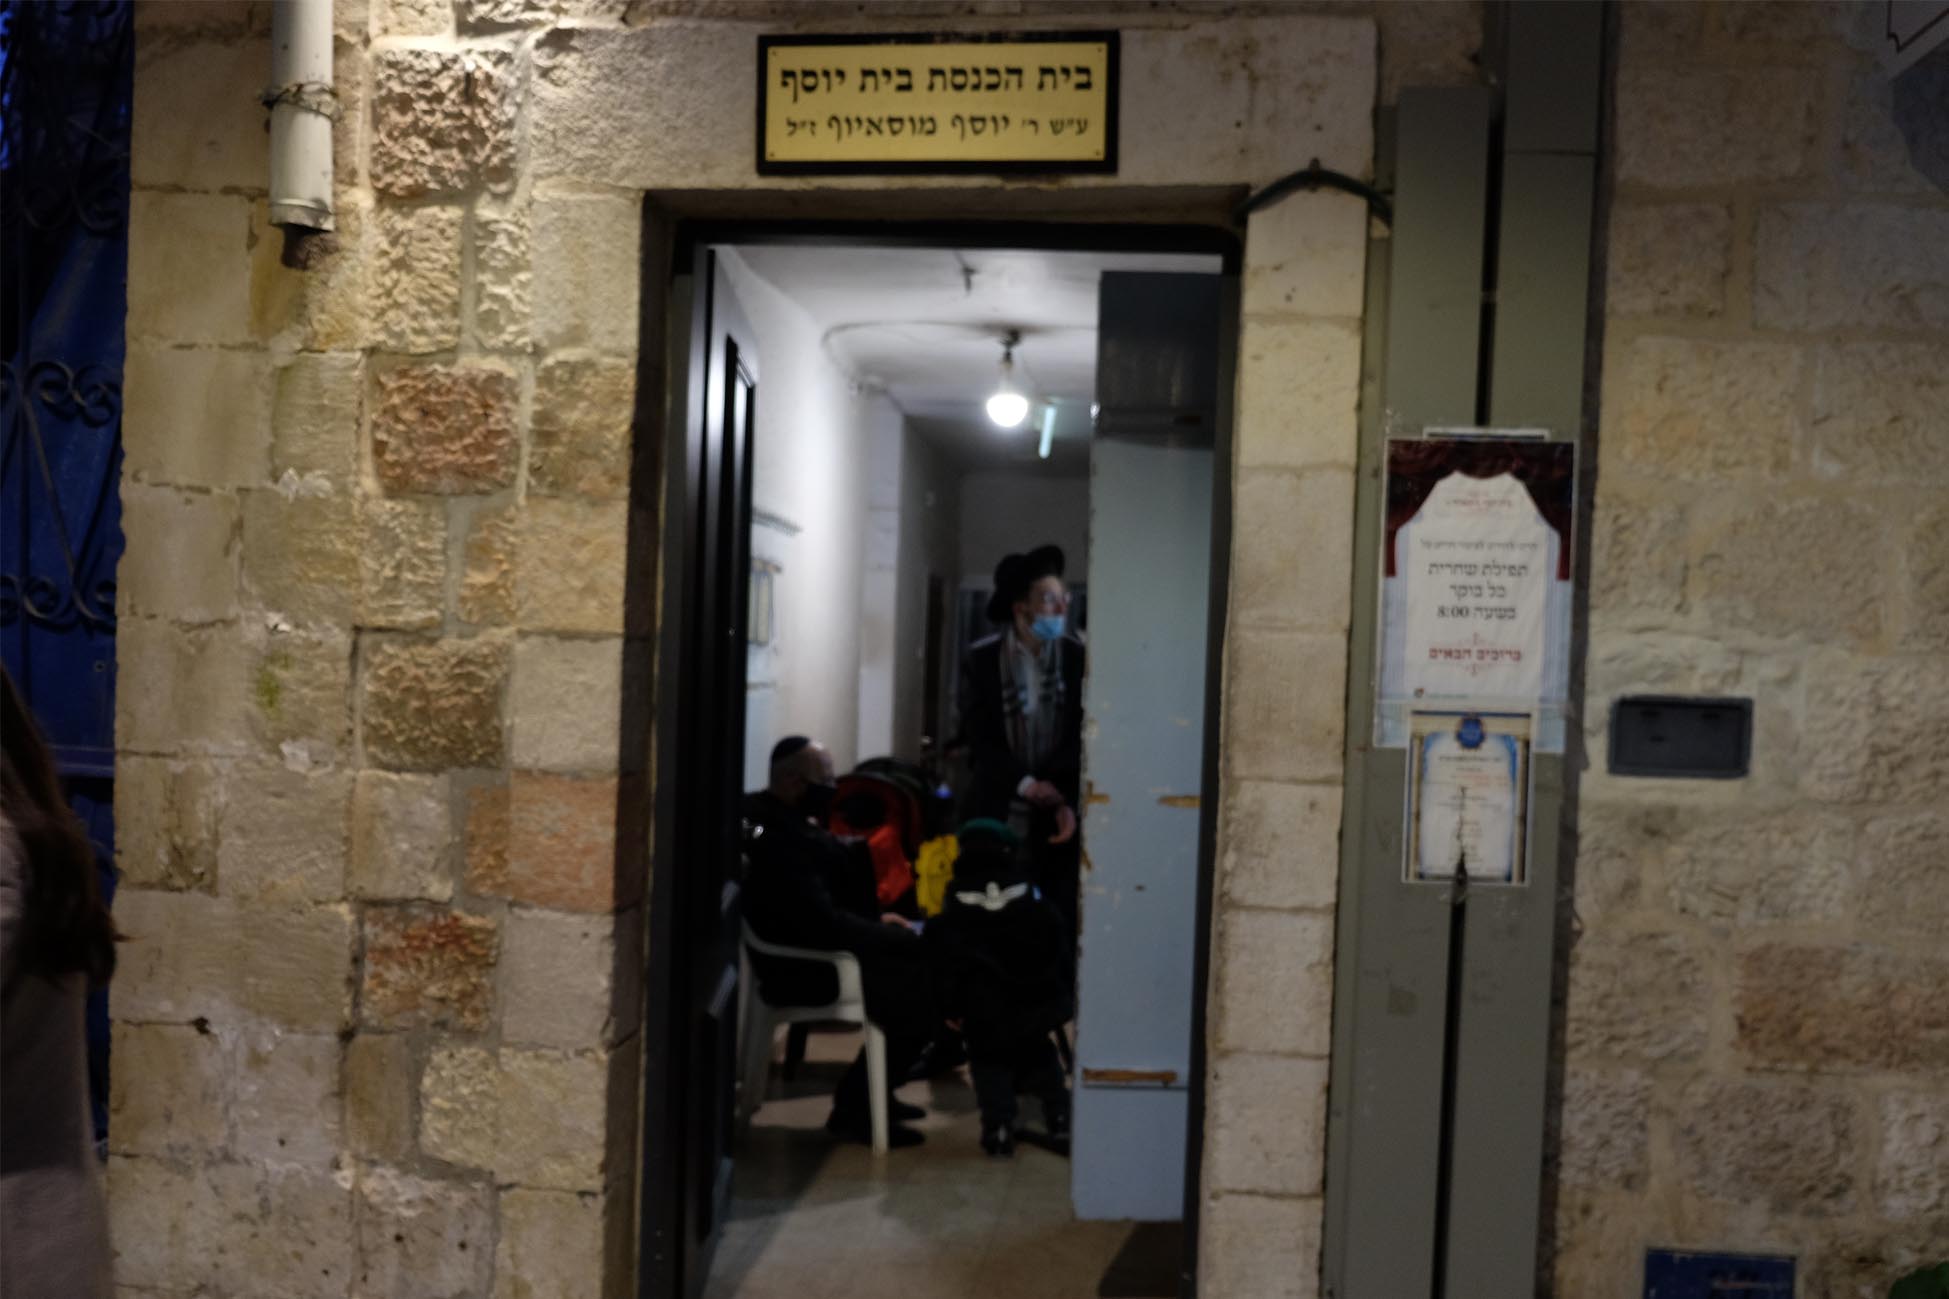 קריאת מגילה בירושלים, רגע לפני הסגר הלילי (צילום: דוד טברסקי)